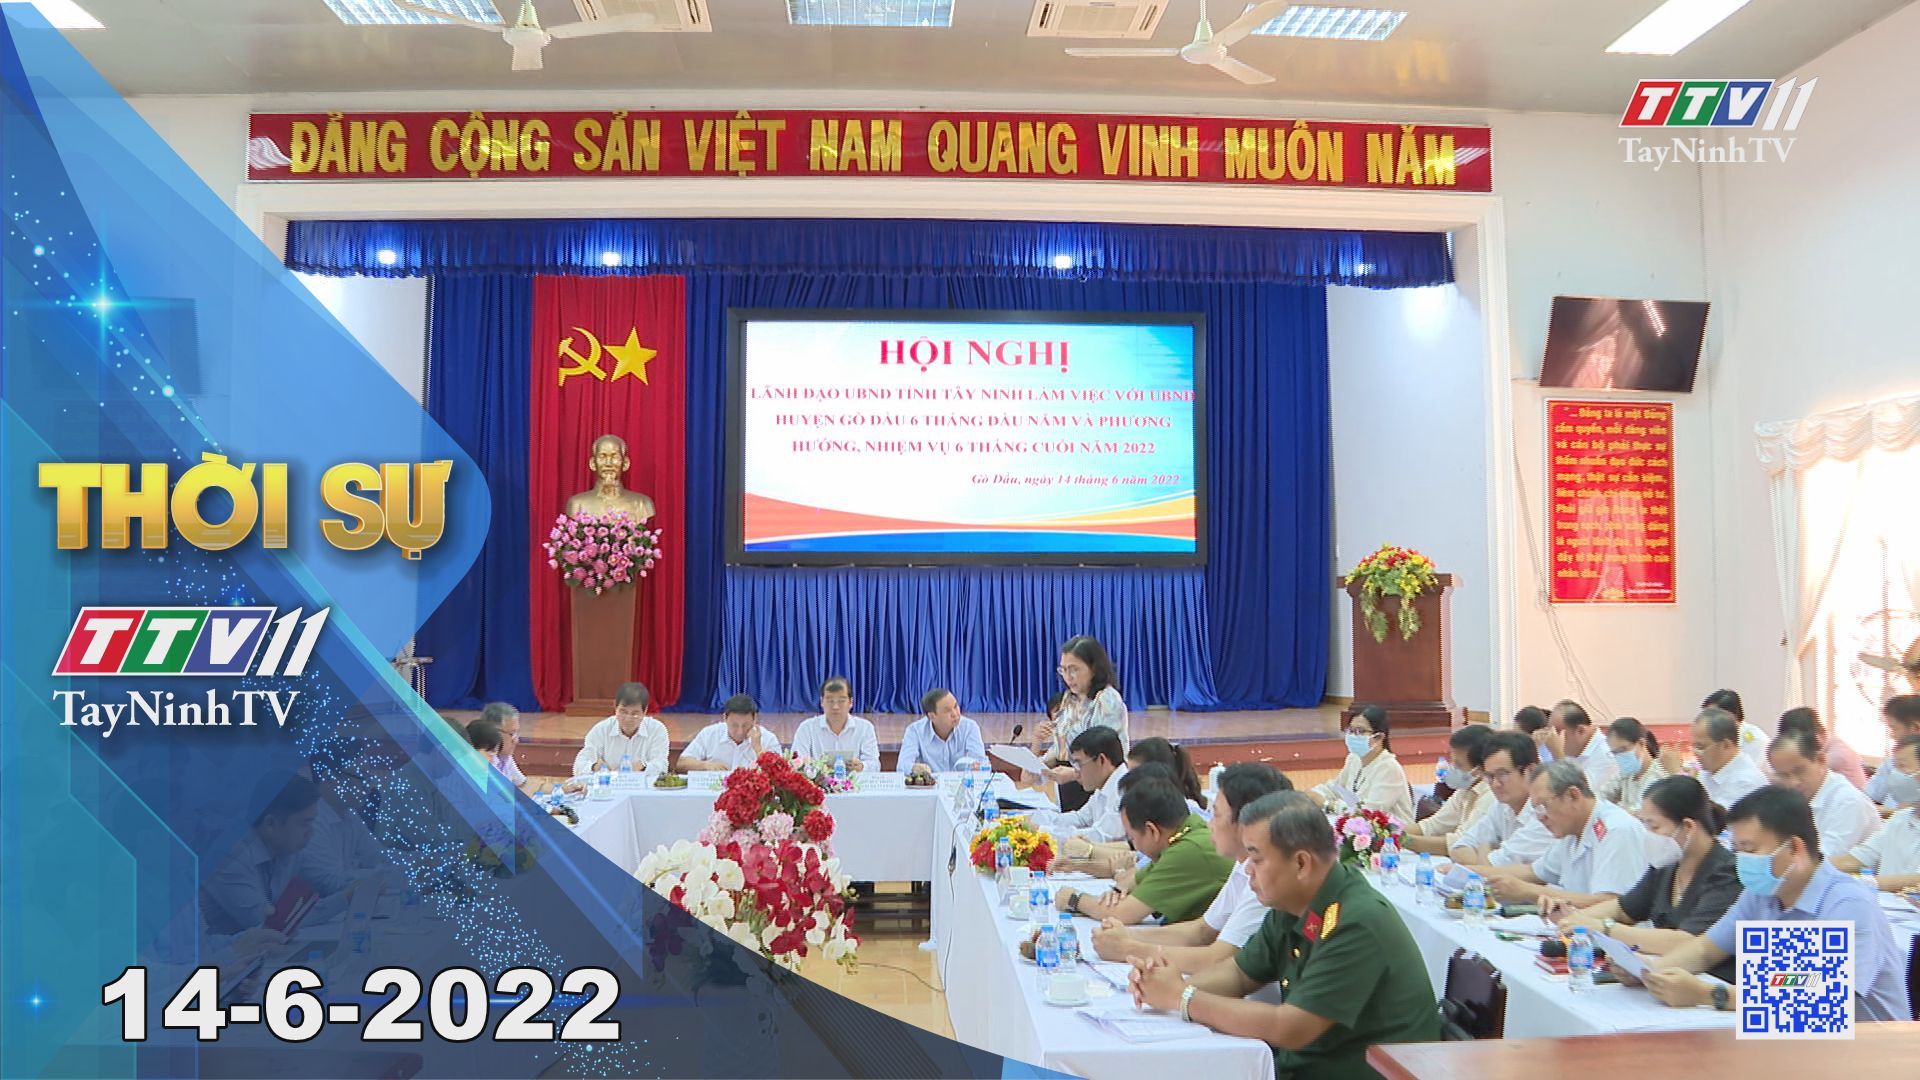 Thời sự Tây Ninh 14-6-2022 | Tin tức hôm nay | TayNinhTV